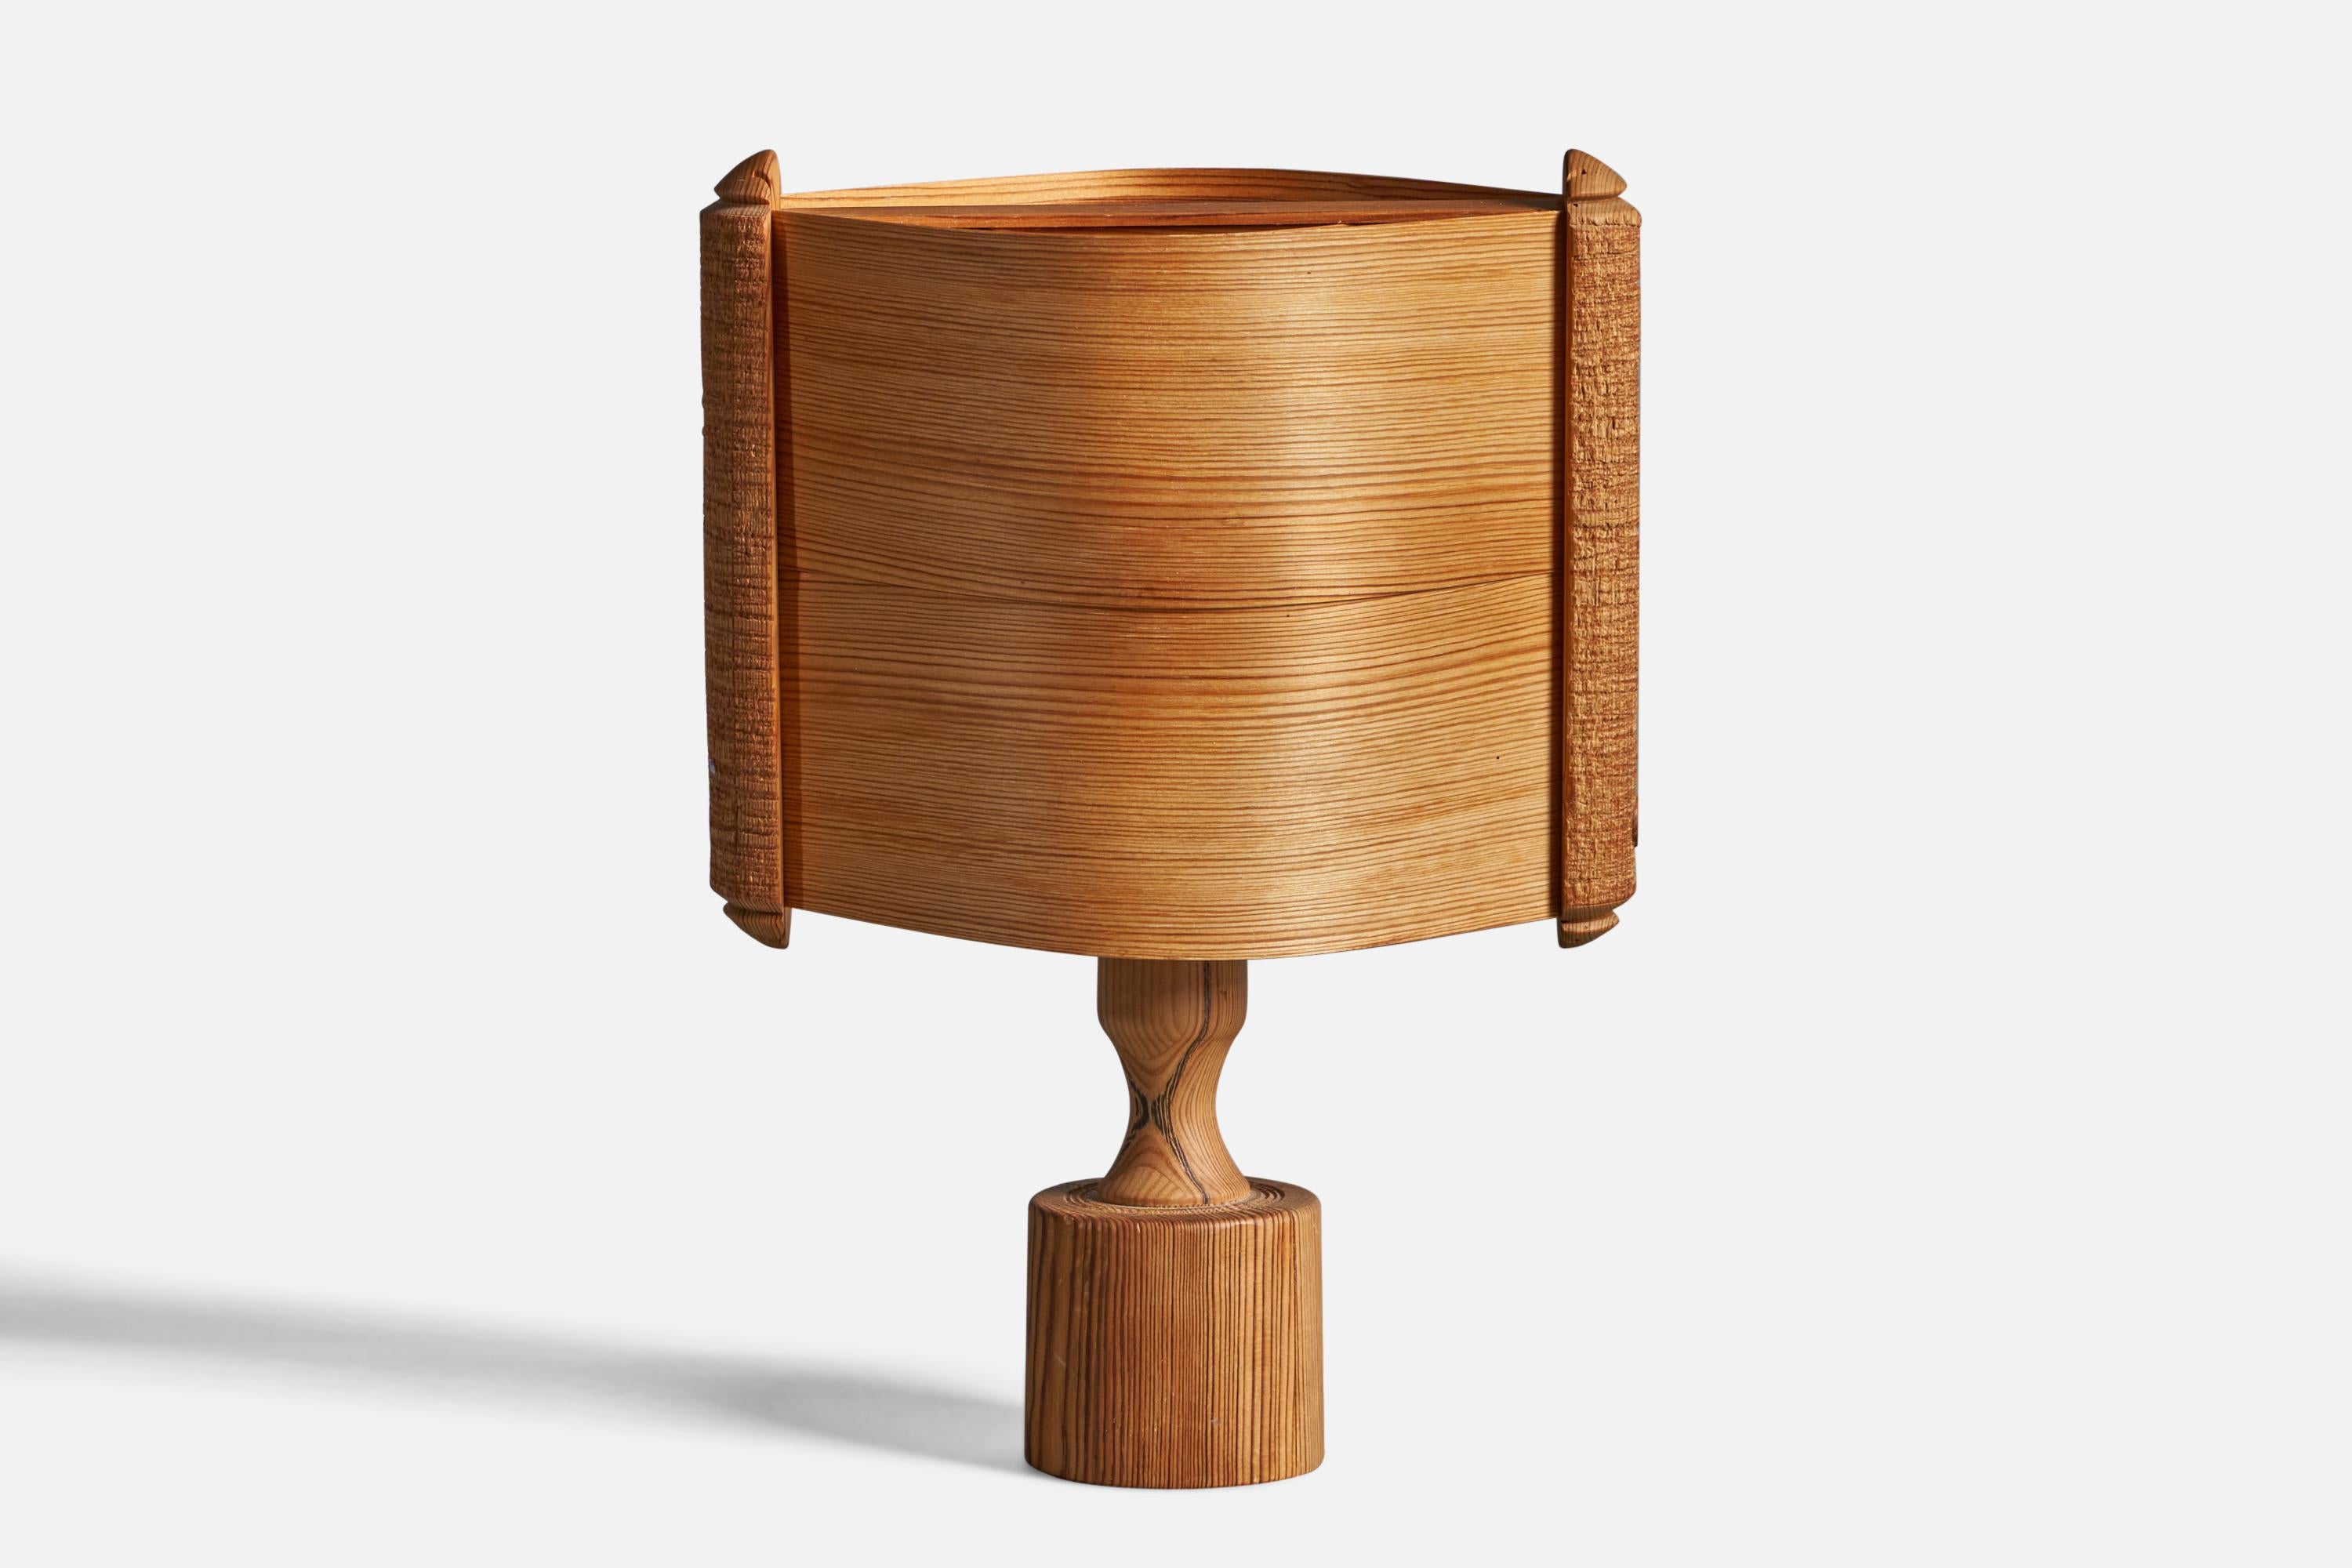 Lampe de table en pin et en pin vénitien moulé, conçue et produite en Suède, années 1970.

Dimensions globales (pouces) : 14.25